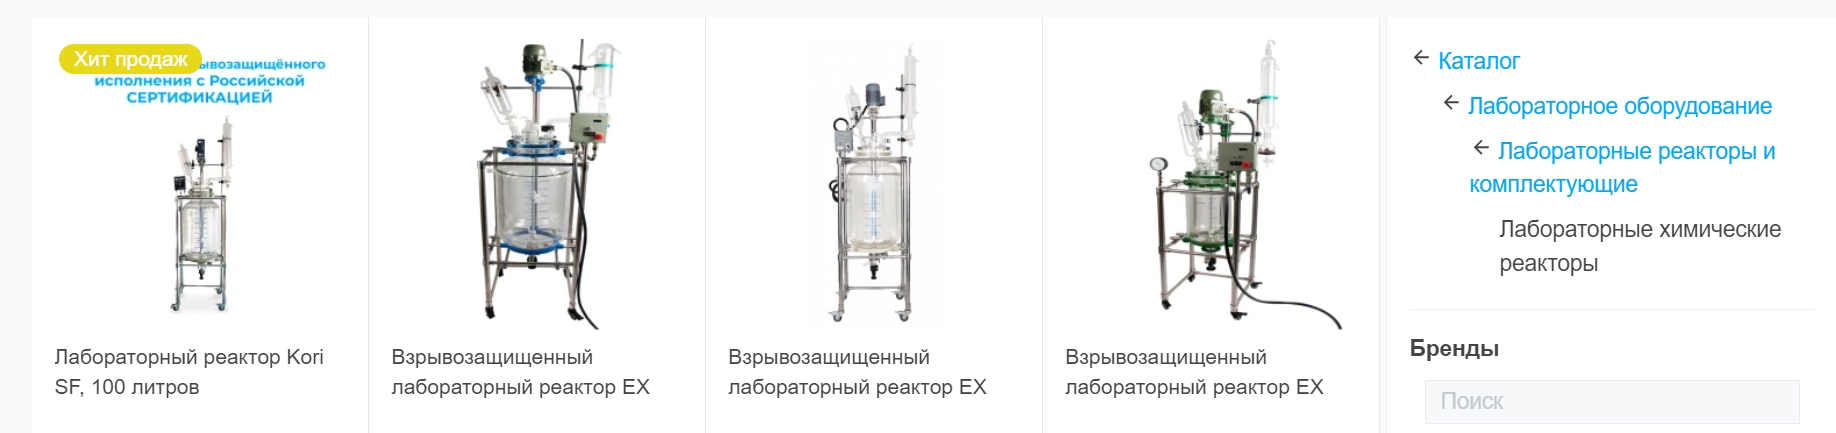 лабораторное оборудование Москва, лабораторные реакторы